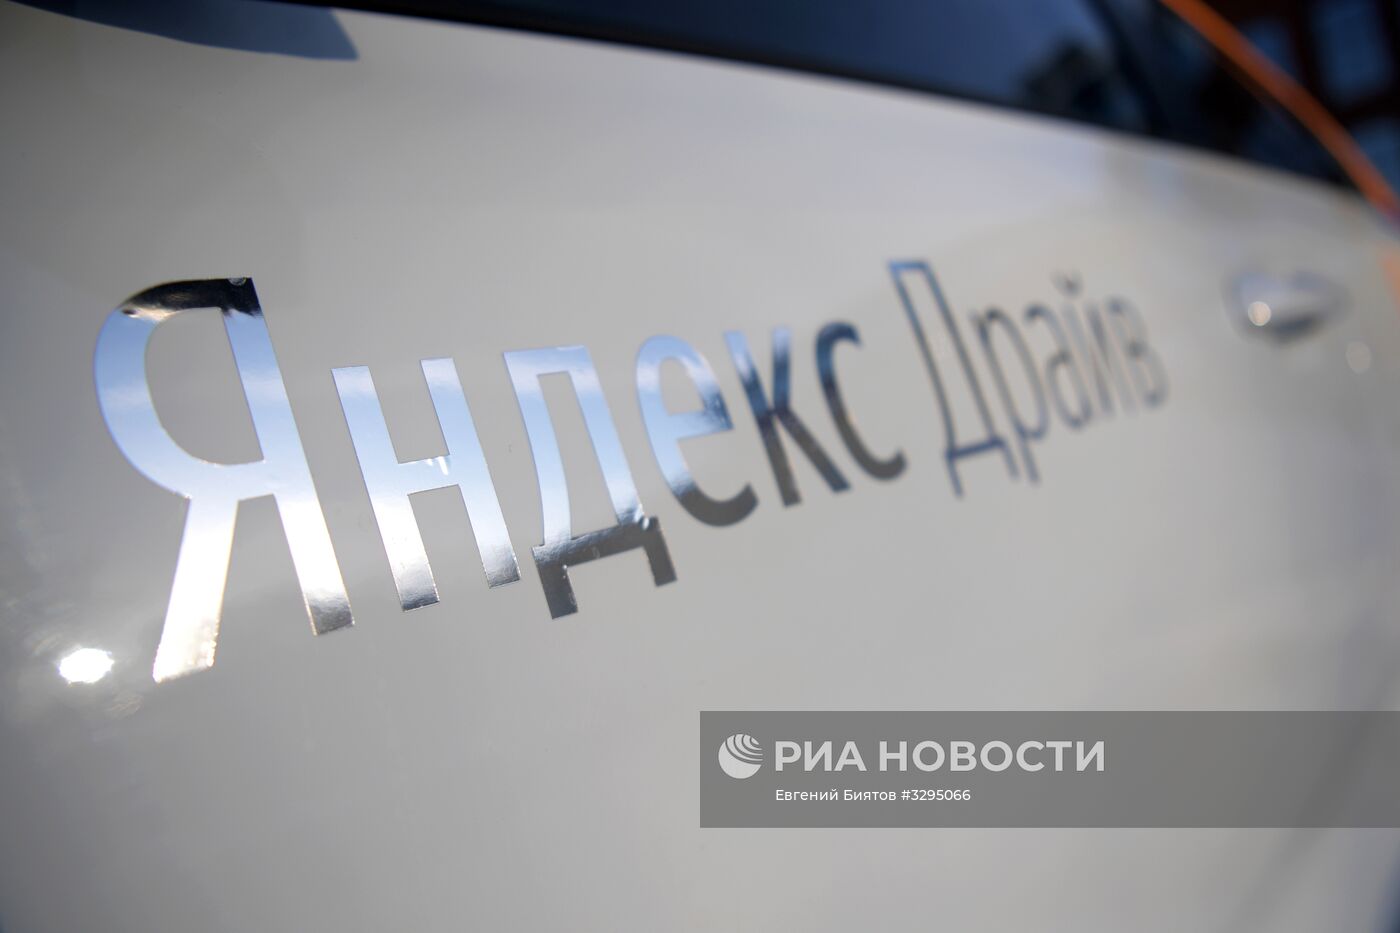 "Яндекс" запускает сервис каршеринга "Яндекс.Драйв"